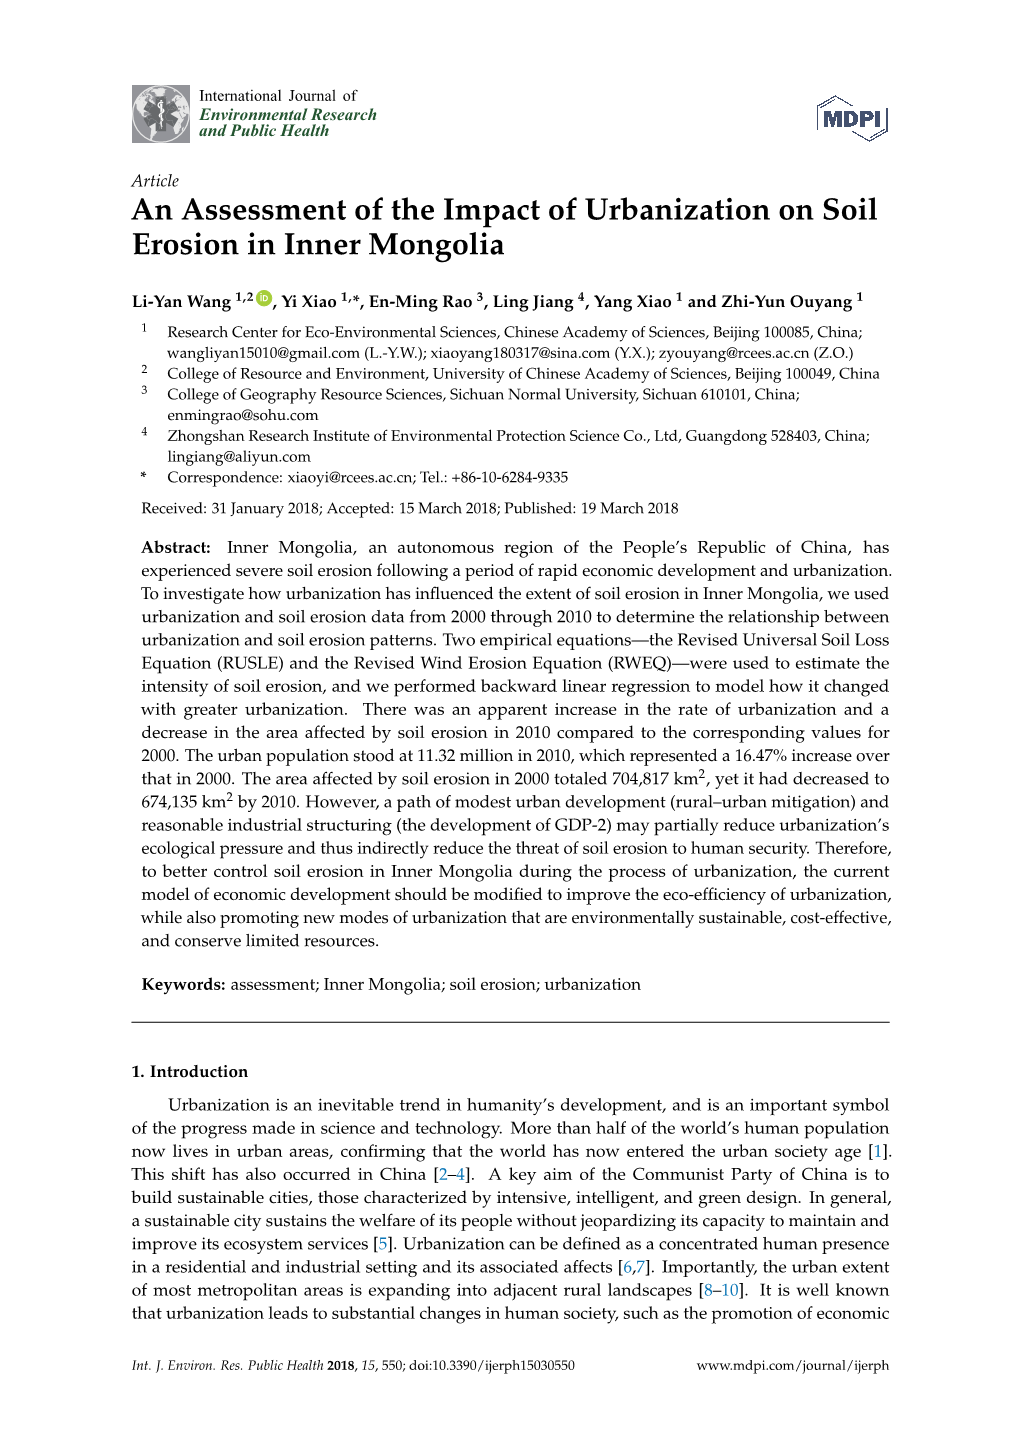 An Assessment of the Impact of Urbanization on Soil Erosion in Inner Mongolia